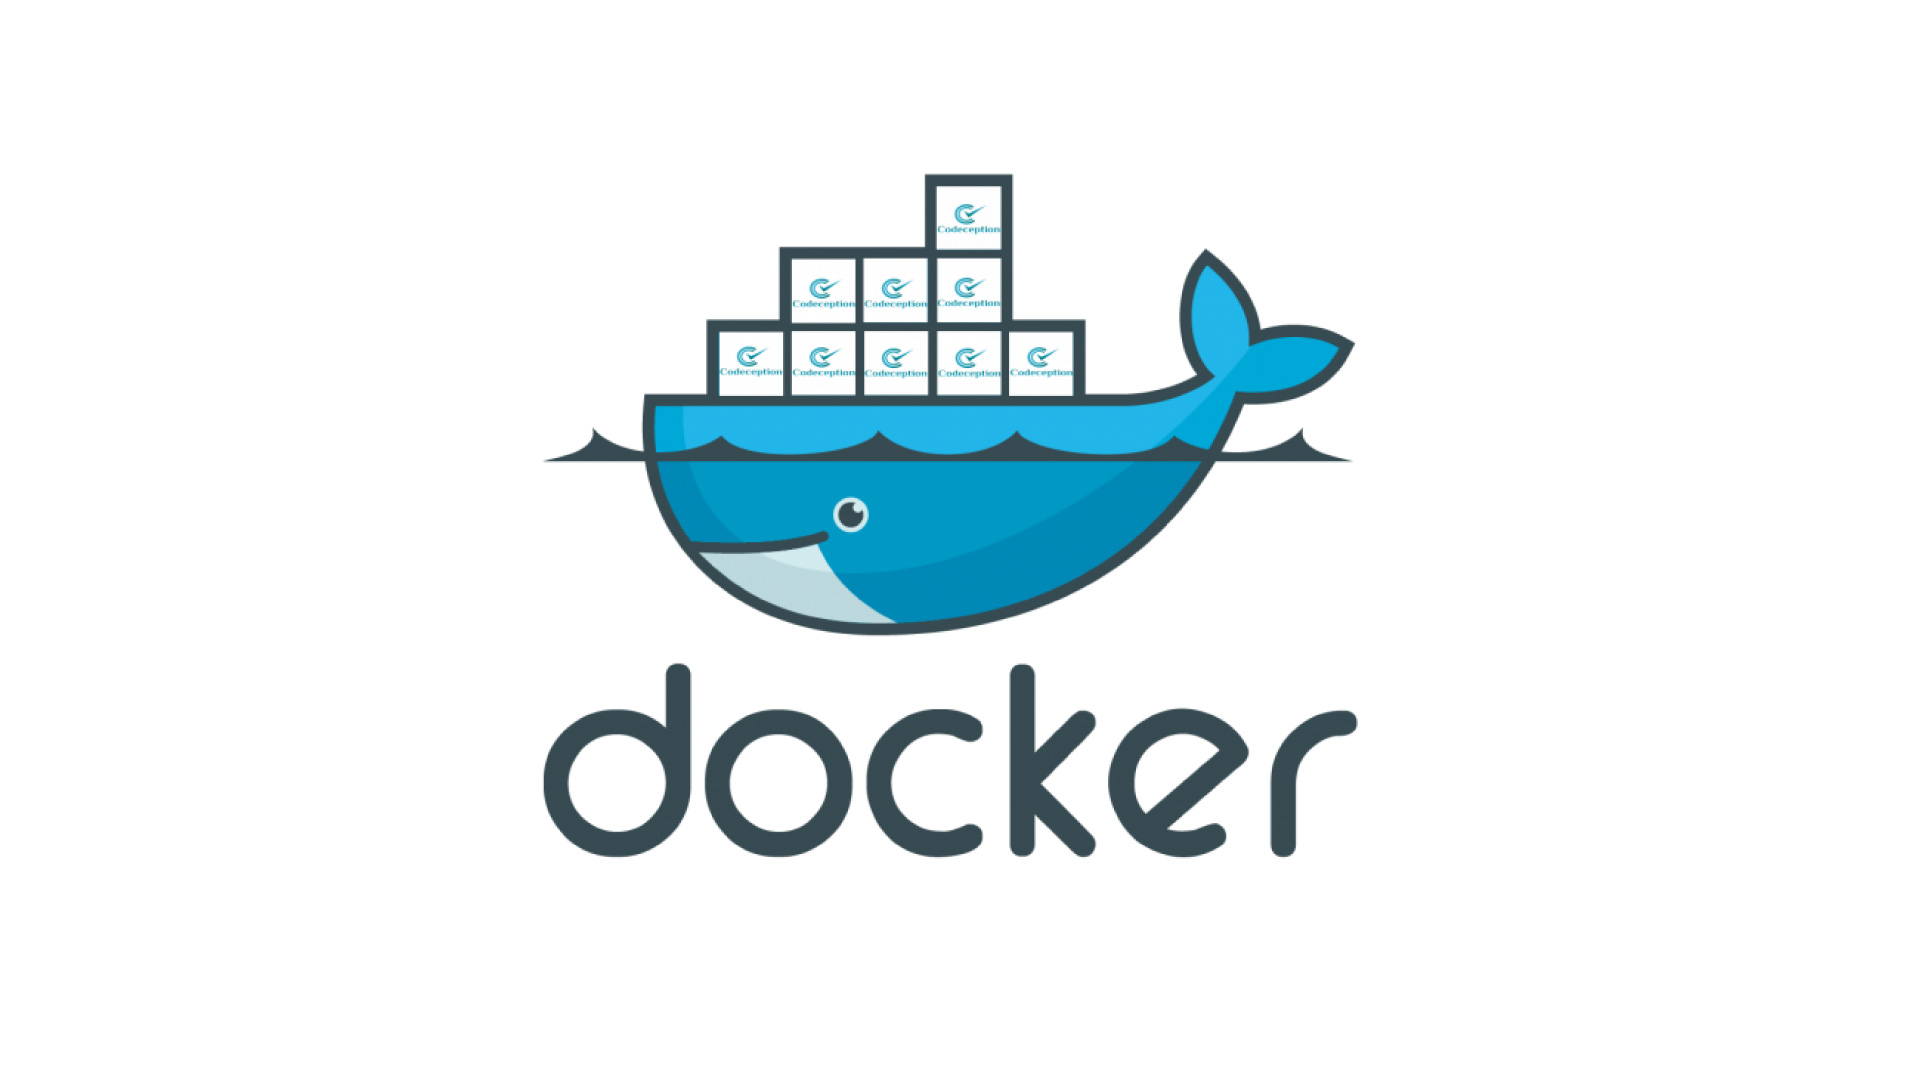 What is Docker?